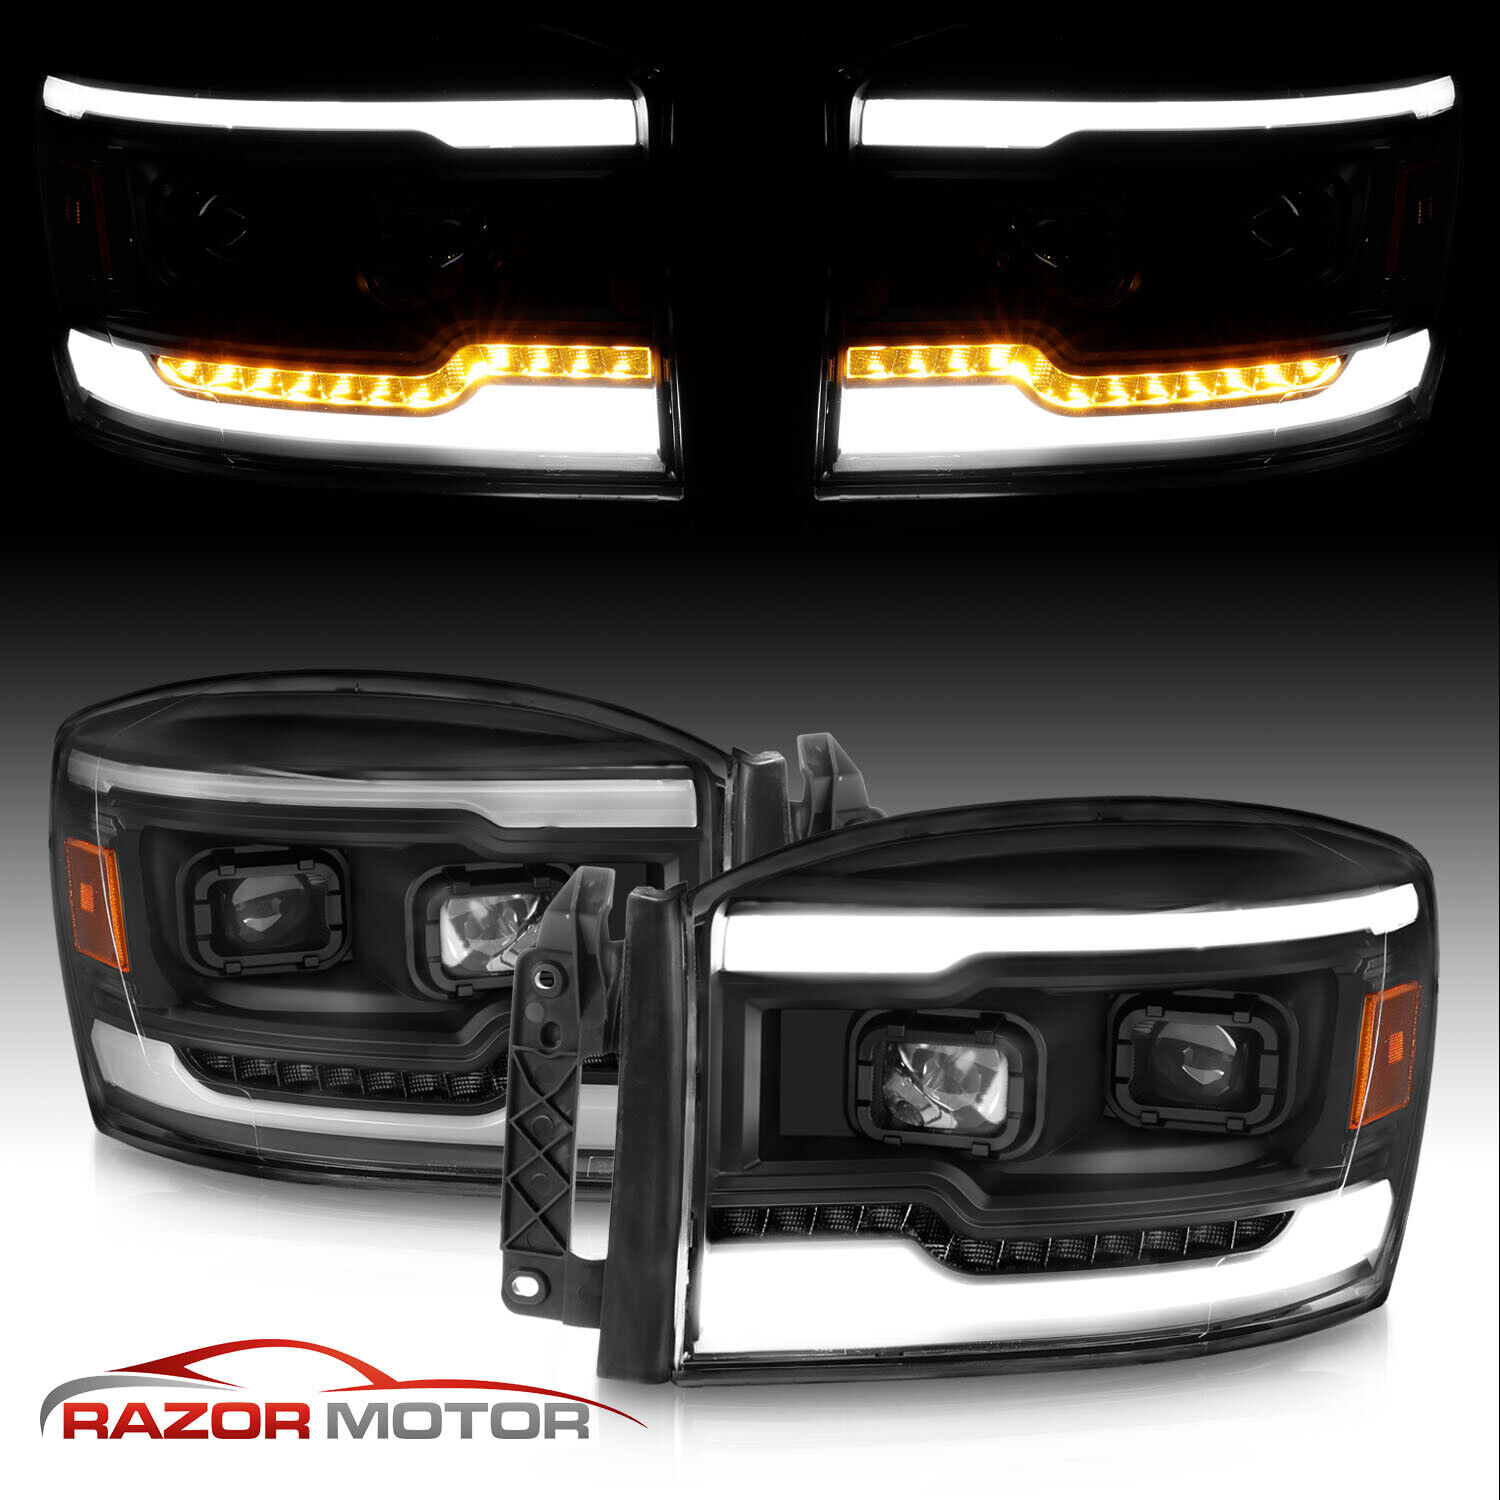 LED Light Bar For 2006-2009 Dodge Ram 1500 2500 3500 Pickup Black Headlights